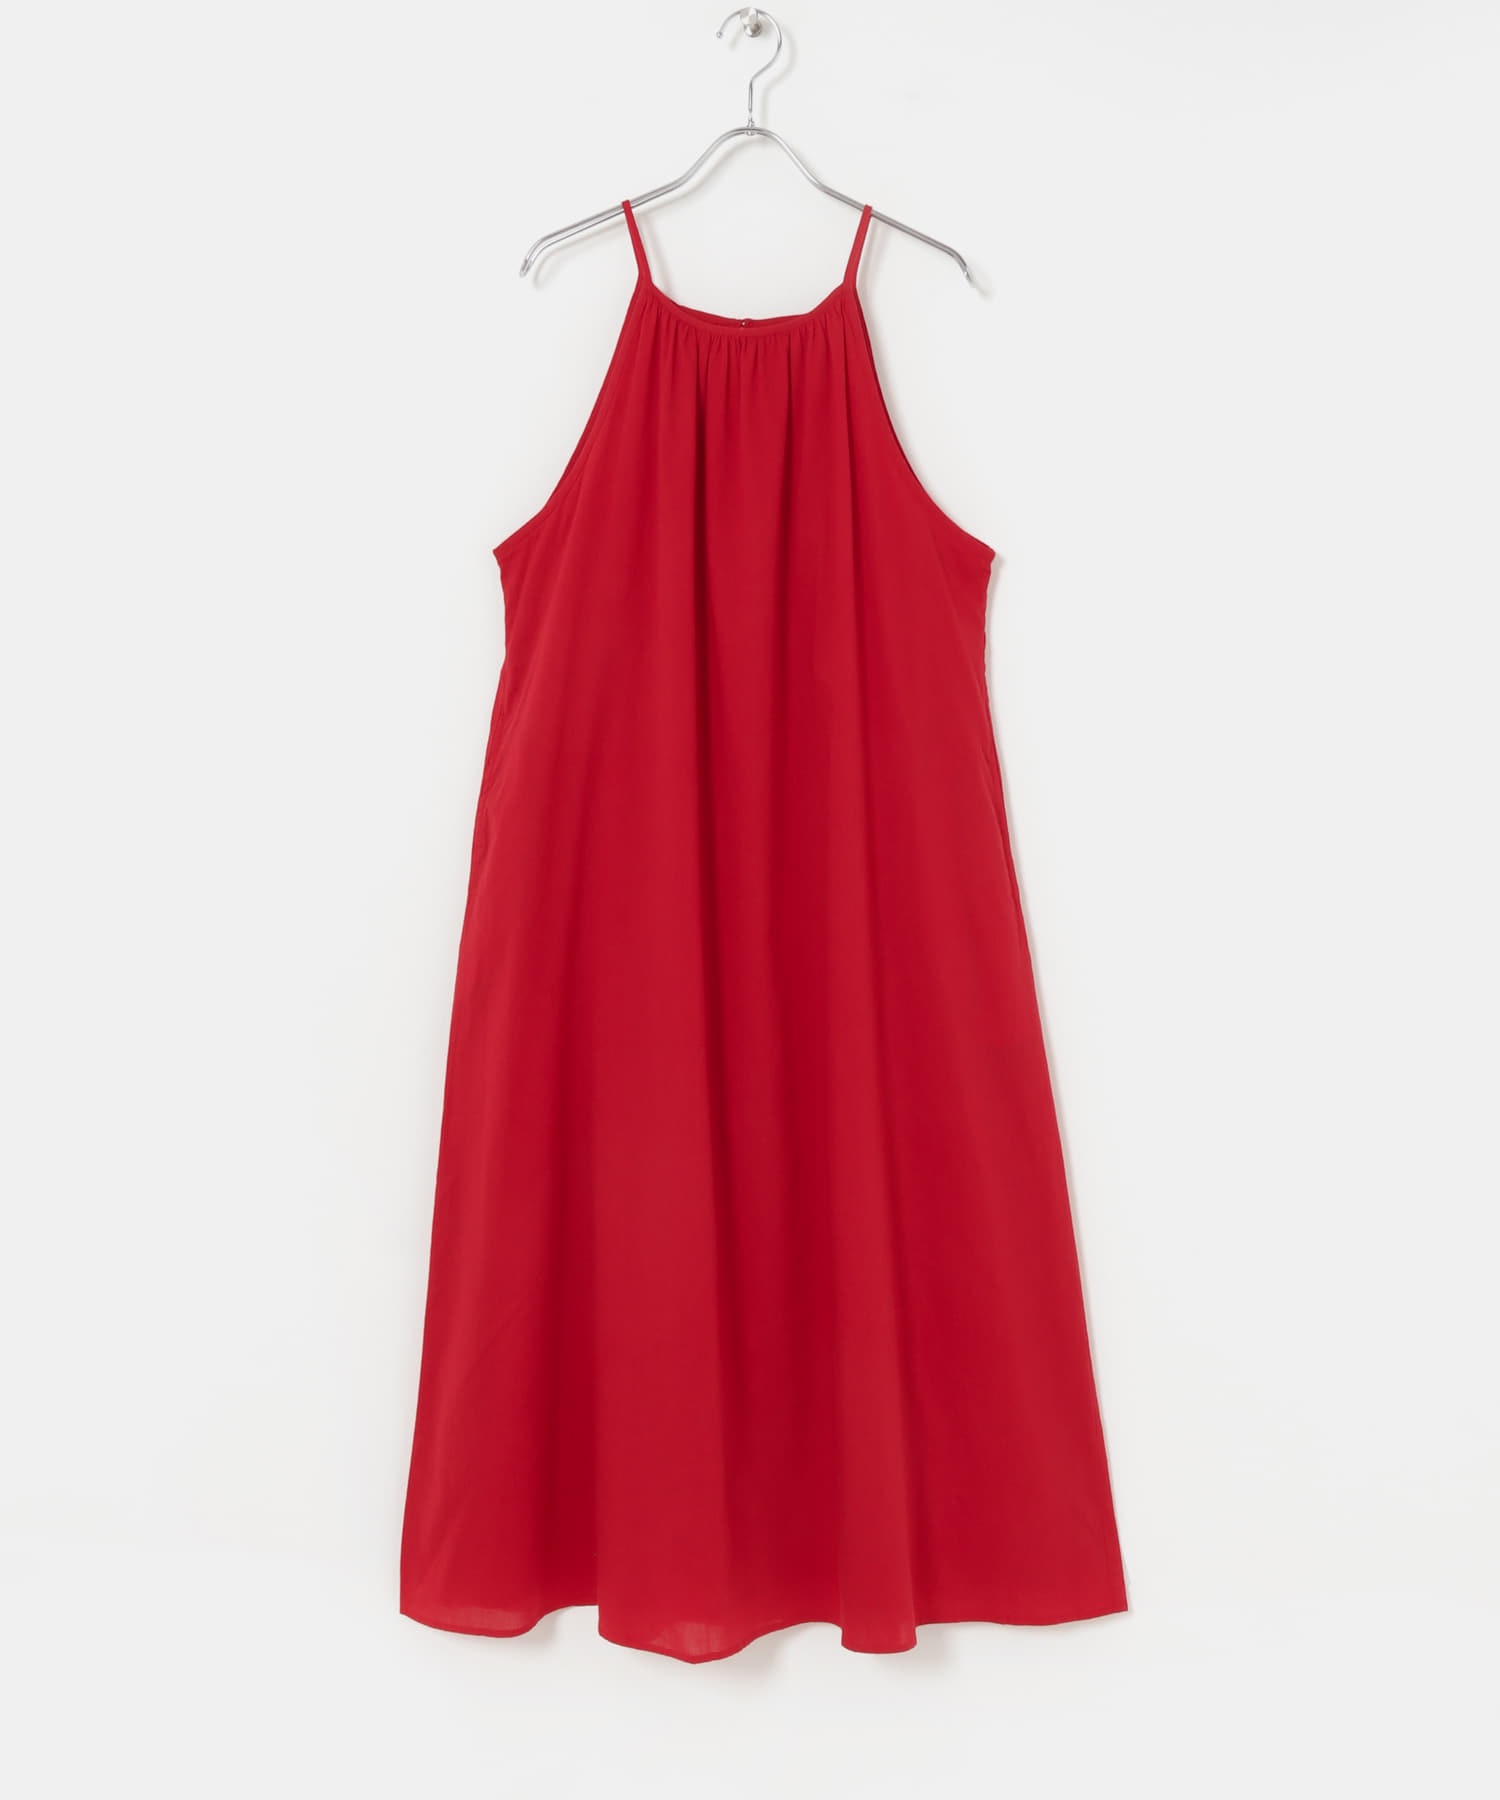 棉質巴里紗挖肩細肩帶洋裝(紅色-36-RED)